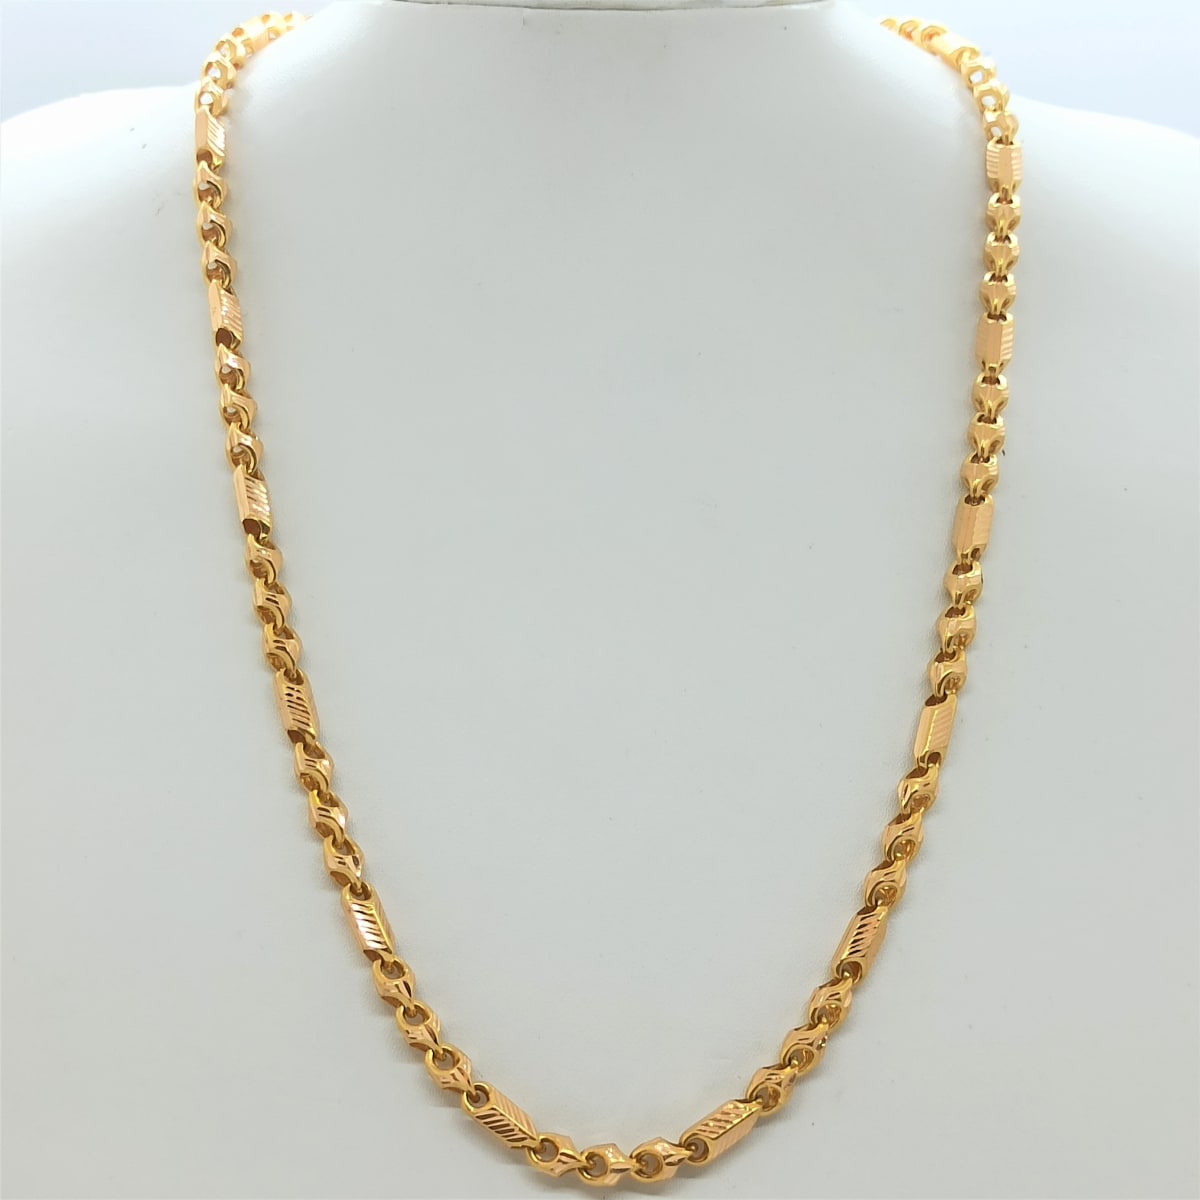 Buy Bahubali Gold Chain Online | Ramya Jewellers - JewelFlix